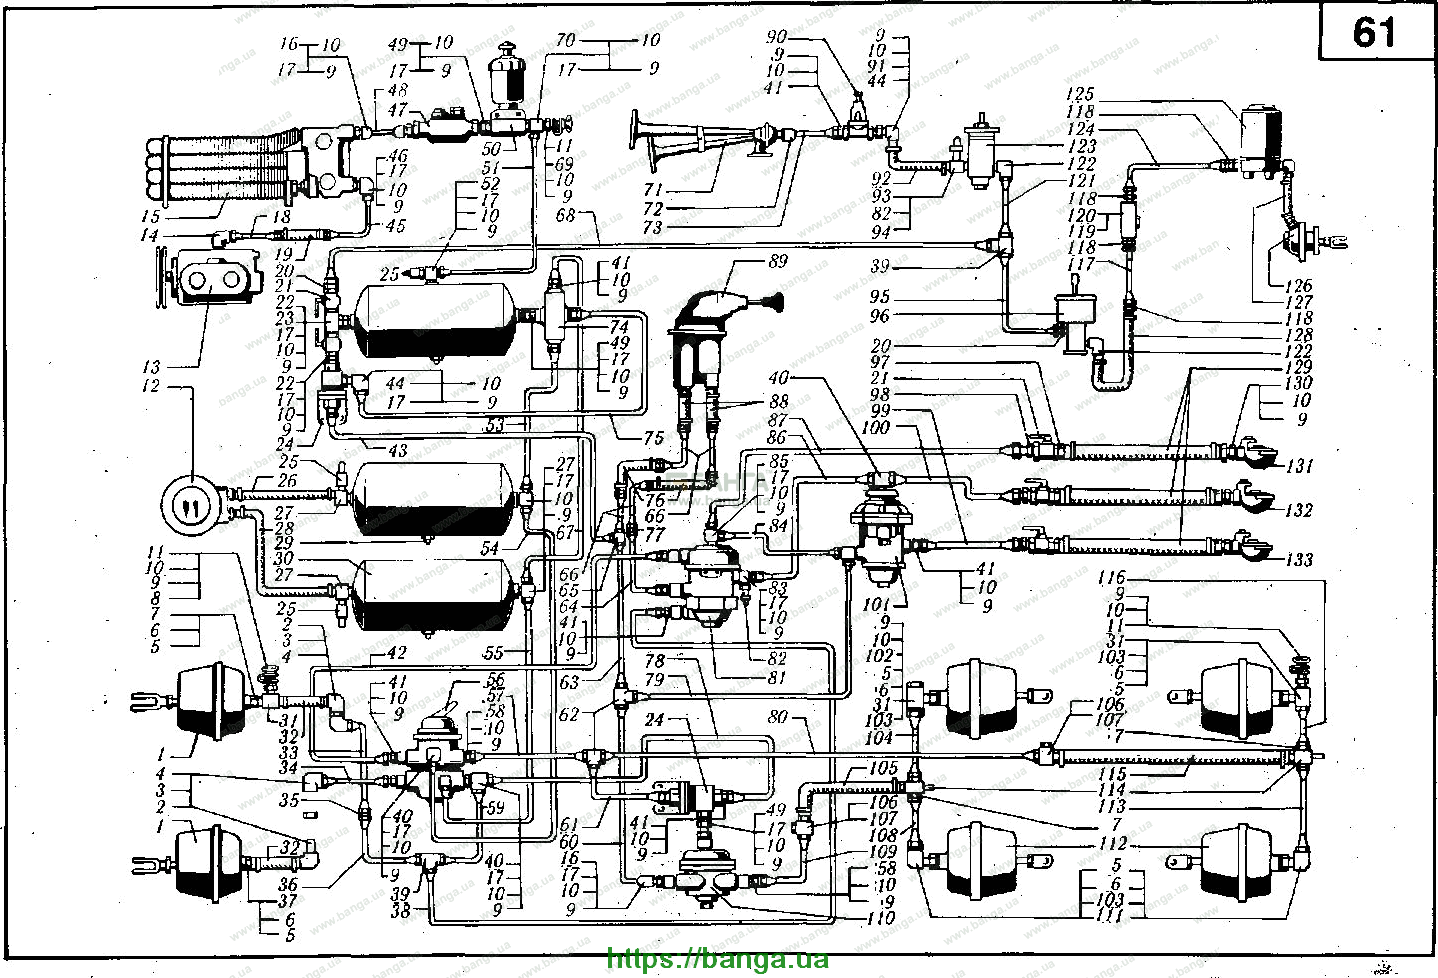 Установка и привод компрессора КРАЗ-6510